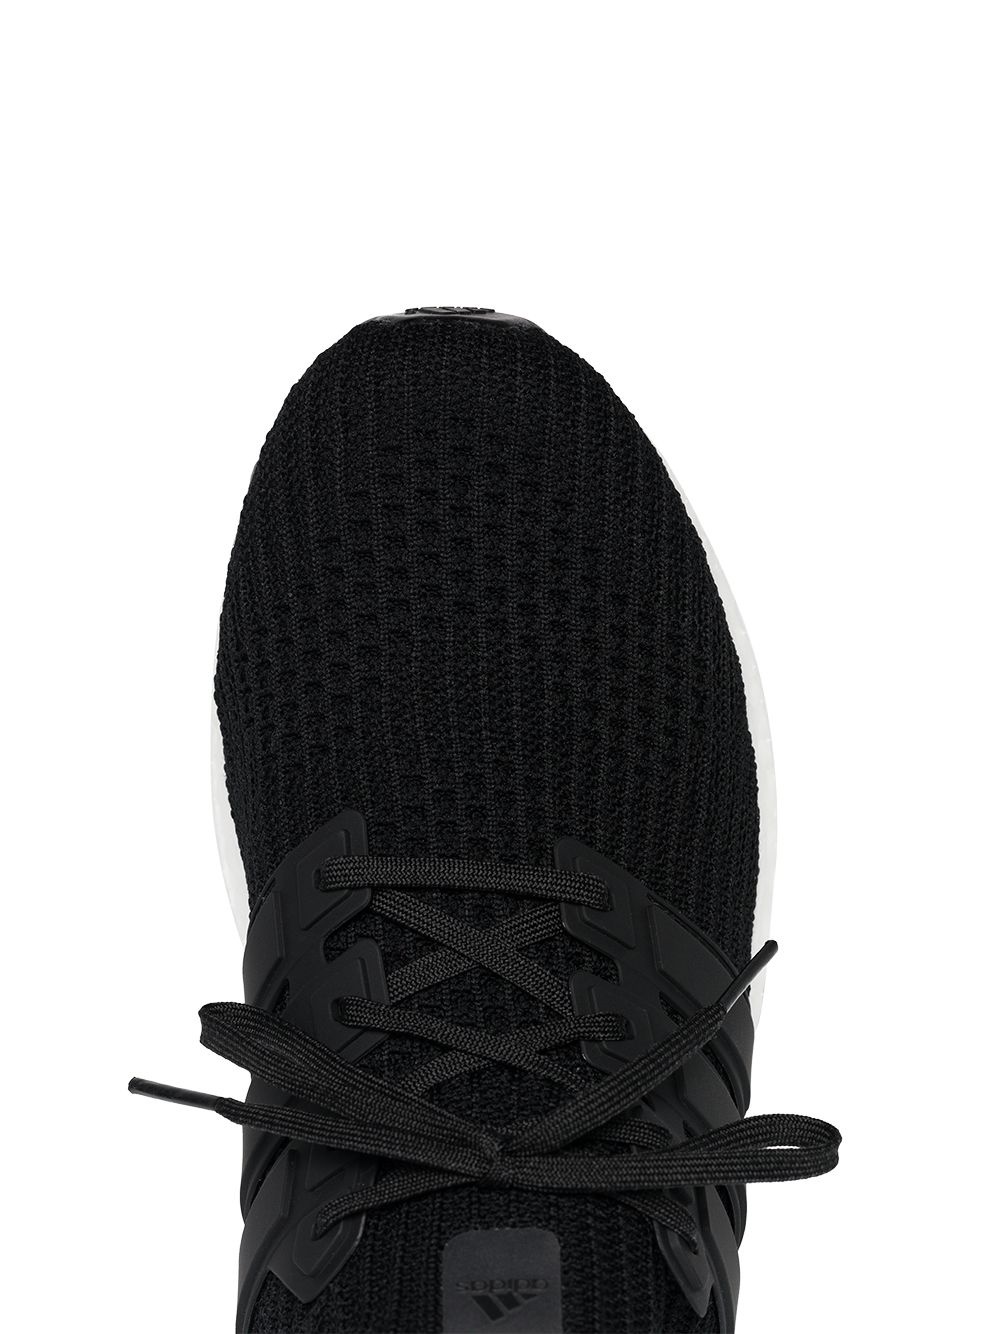 Ultraboost "4.0 Core Black" sneakers - 4